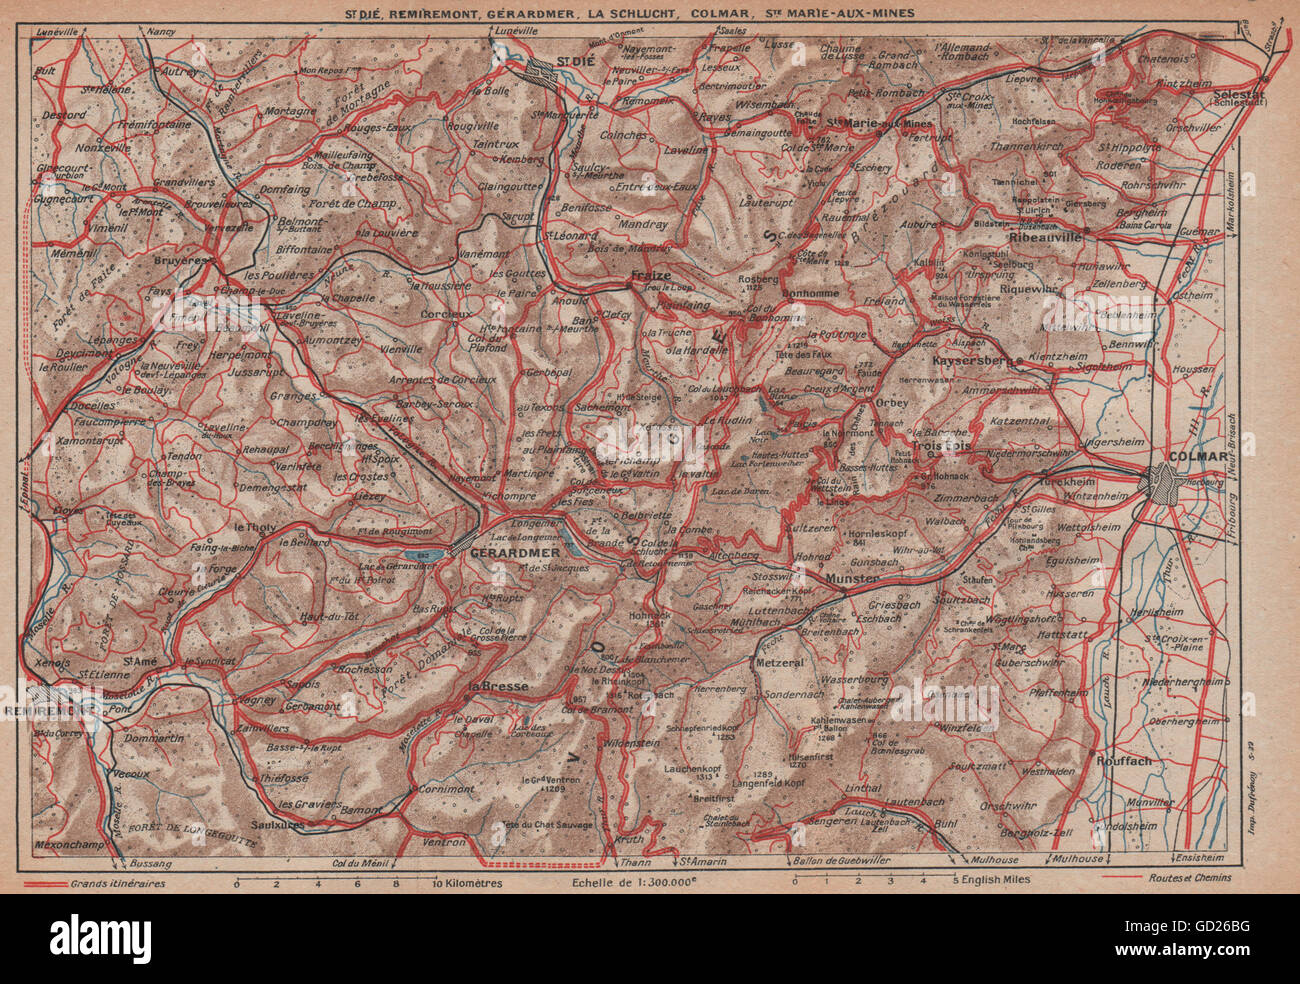 VOSGES.St Dié Remiremont Gérardmer la Schlucht Colmar.Haut-Rhin.Alsace, 1922 map Banque D'Images